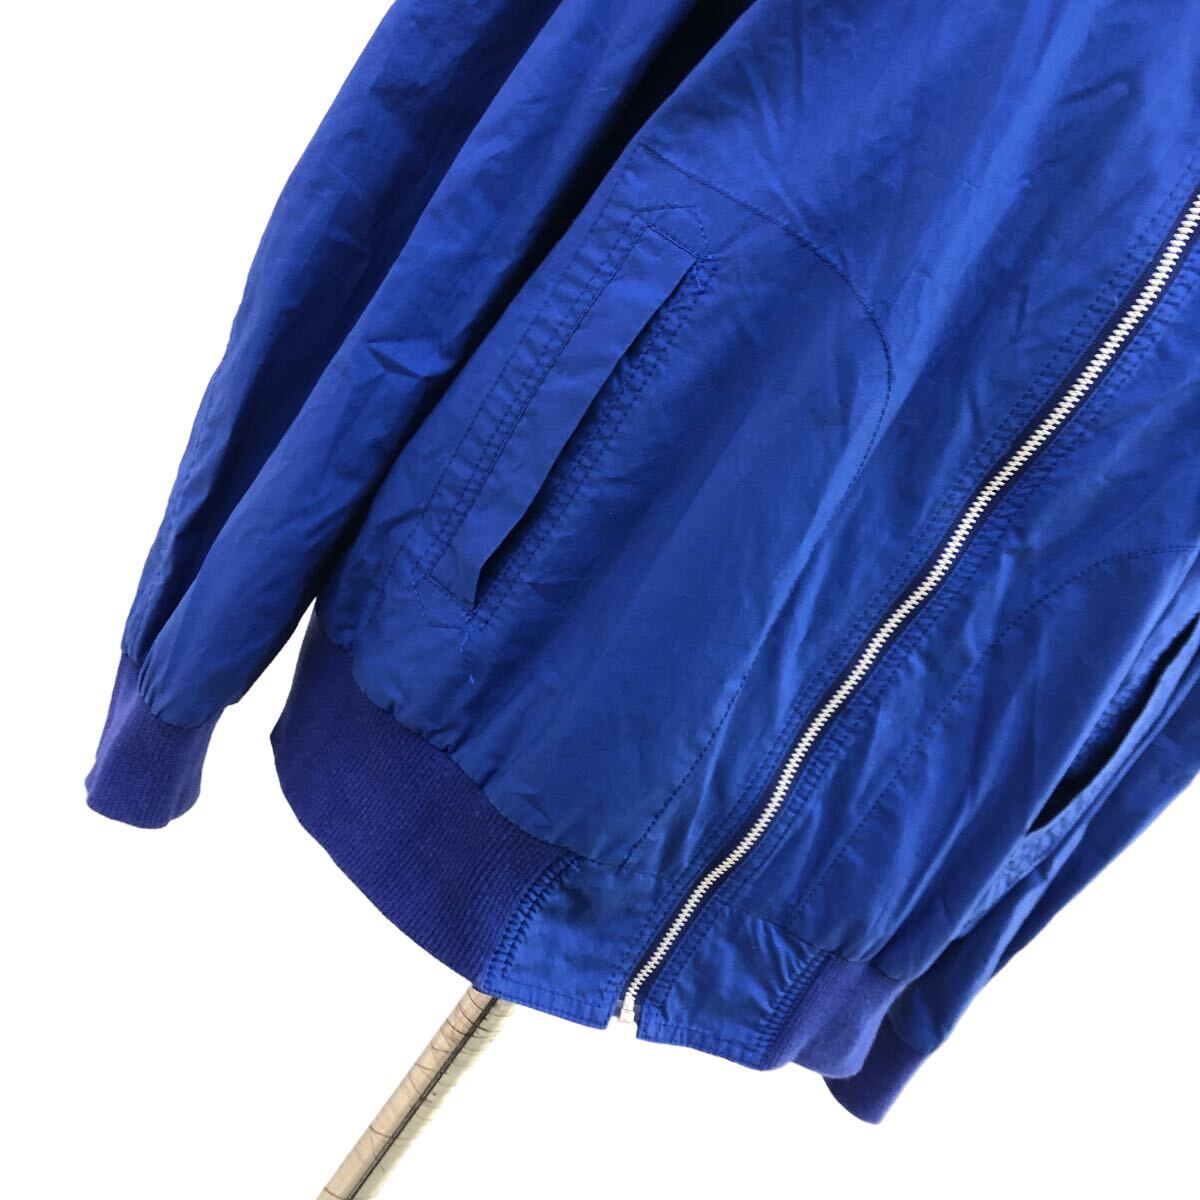 S190 日本製 伊太利屋 イタリヤ GK ITALIYA ジャケット MA-1 ジャンパー ブルゾン 上着 羽織り アウター 綿 コットン 11 ブルー 青す_画像3